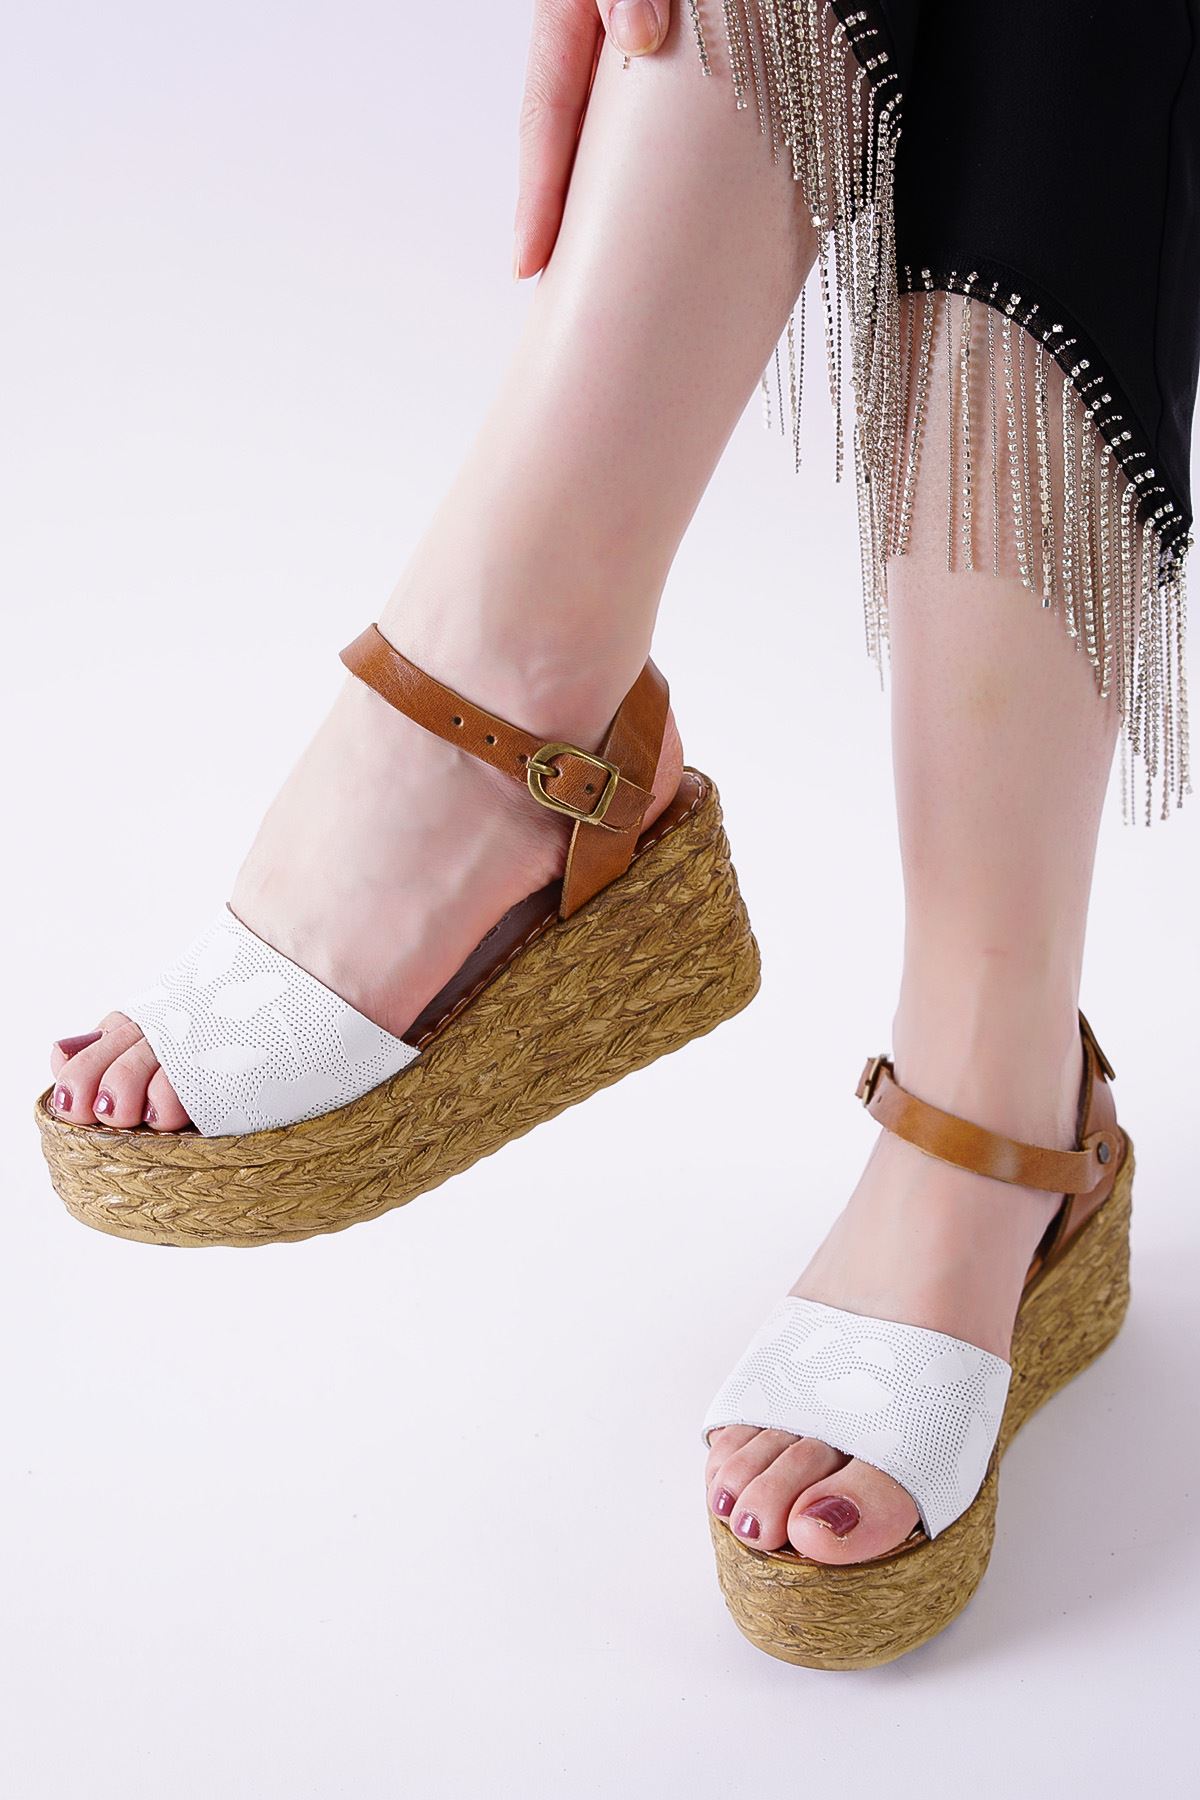 Megan Beyaz Taba Hakiki Deri Dolgu Topuklu Kadın Ayakkabı